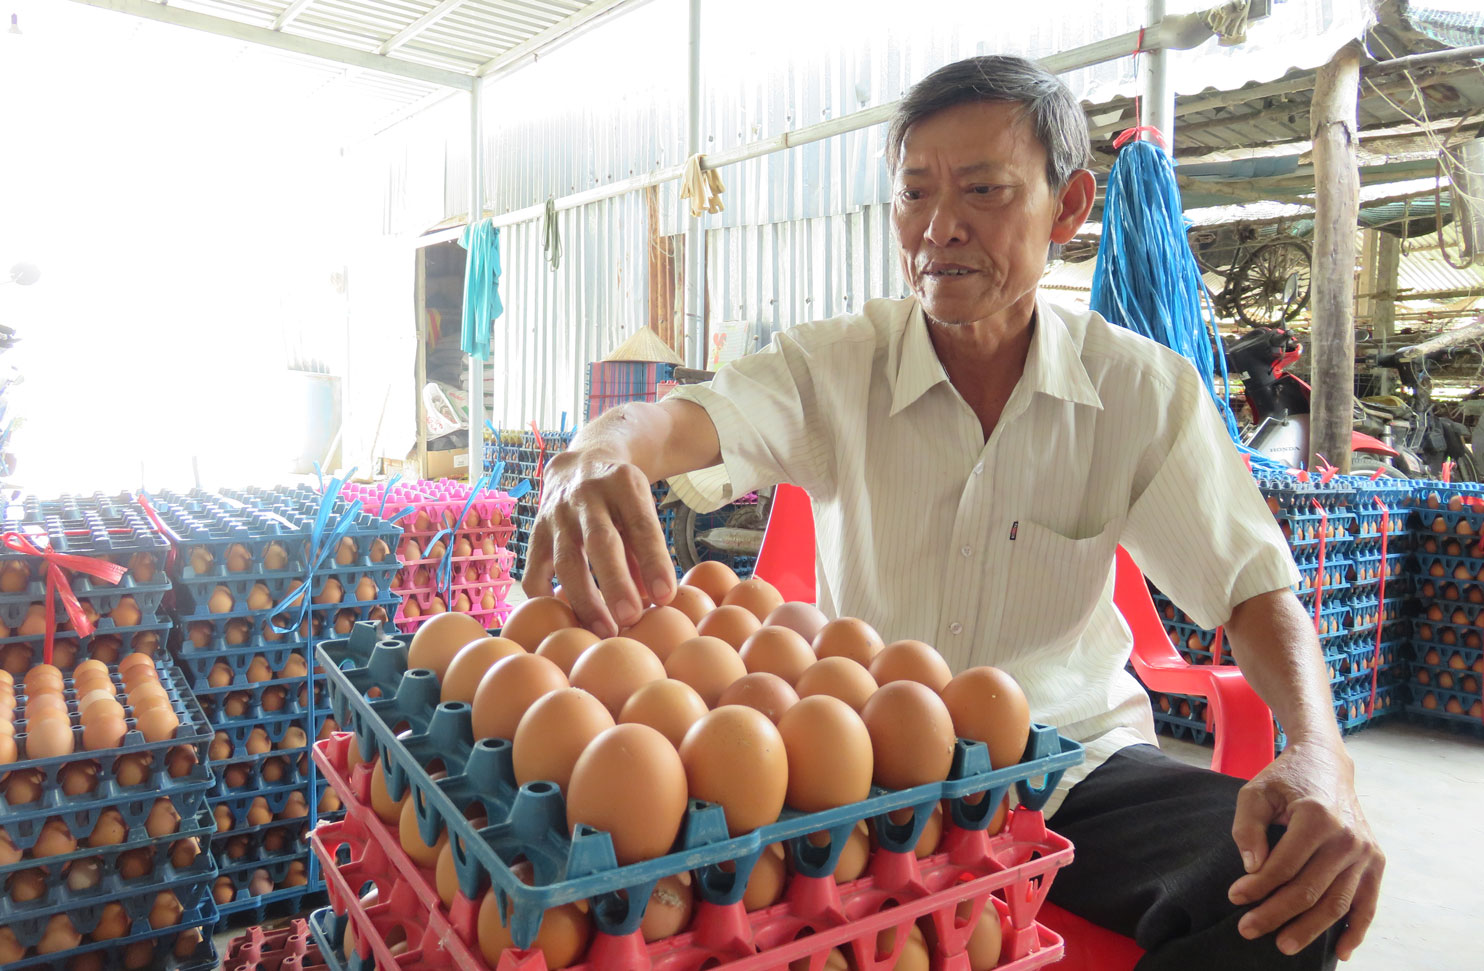 Ông Nguyễn Hoàng Ơn, ngụ ấp Thuận Đông, xã Thuận Thành, huyện Cần Giuộc, đầu tư nuôi 11.000 con gà đẻ trứng từ năm 2010 đến nay